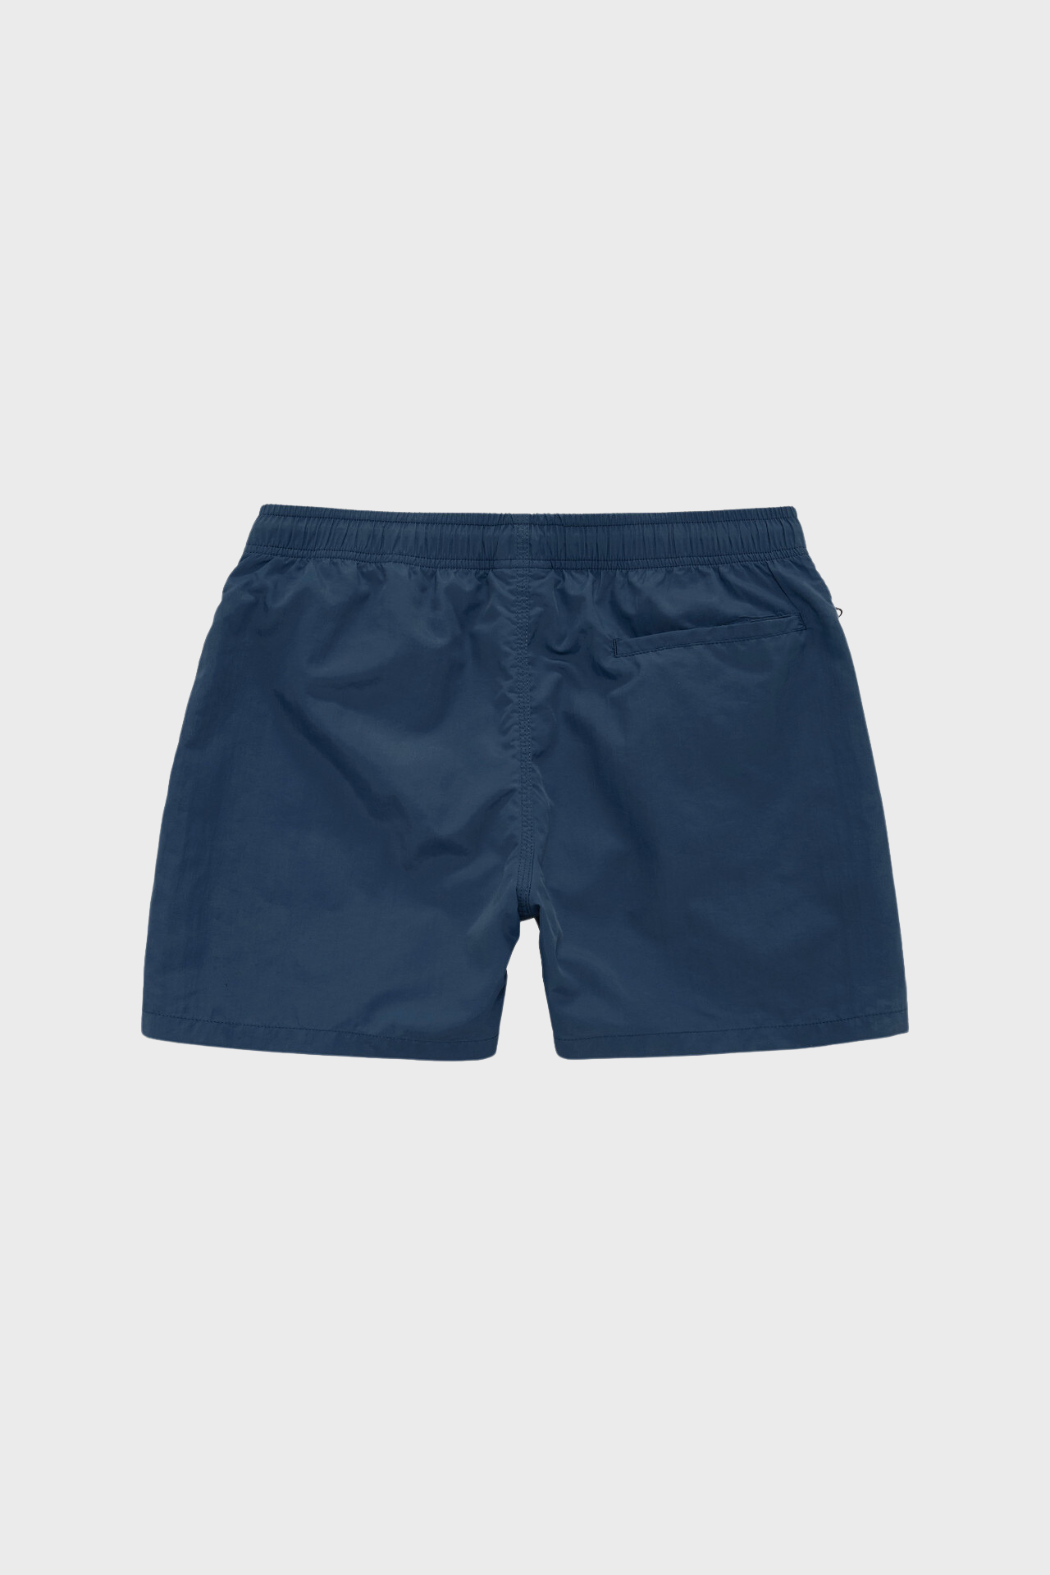 Nylon Swim Shorts in Navy